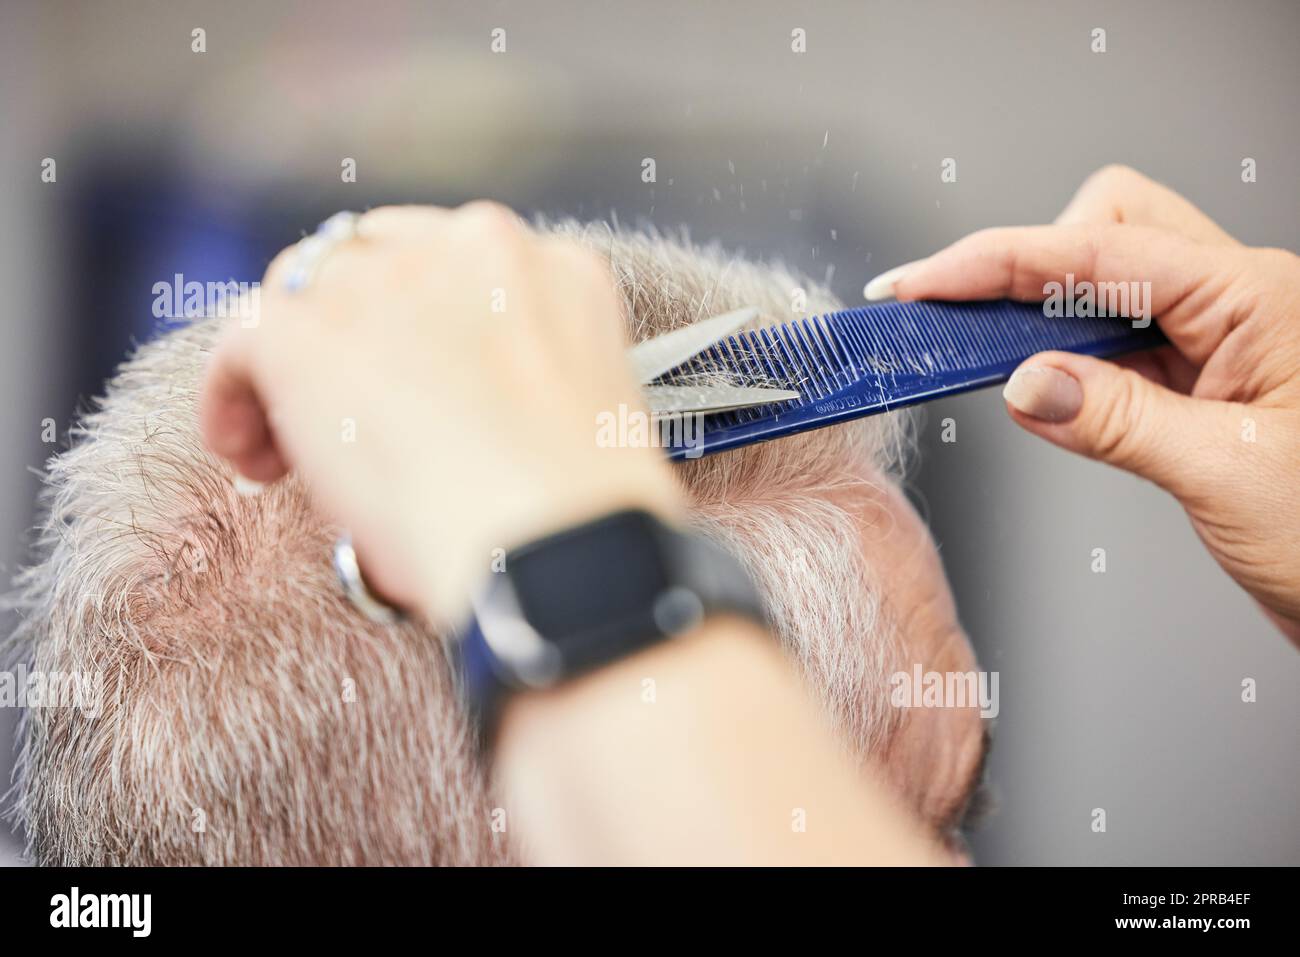 Ein Haarschnitt macht einen großen Unterschied zu Ihrem Aussehen. Ein Mann bekommt einen Haarschnitt in einem Salon. Stockfoto